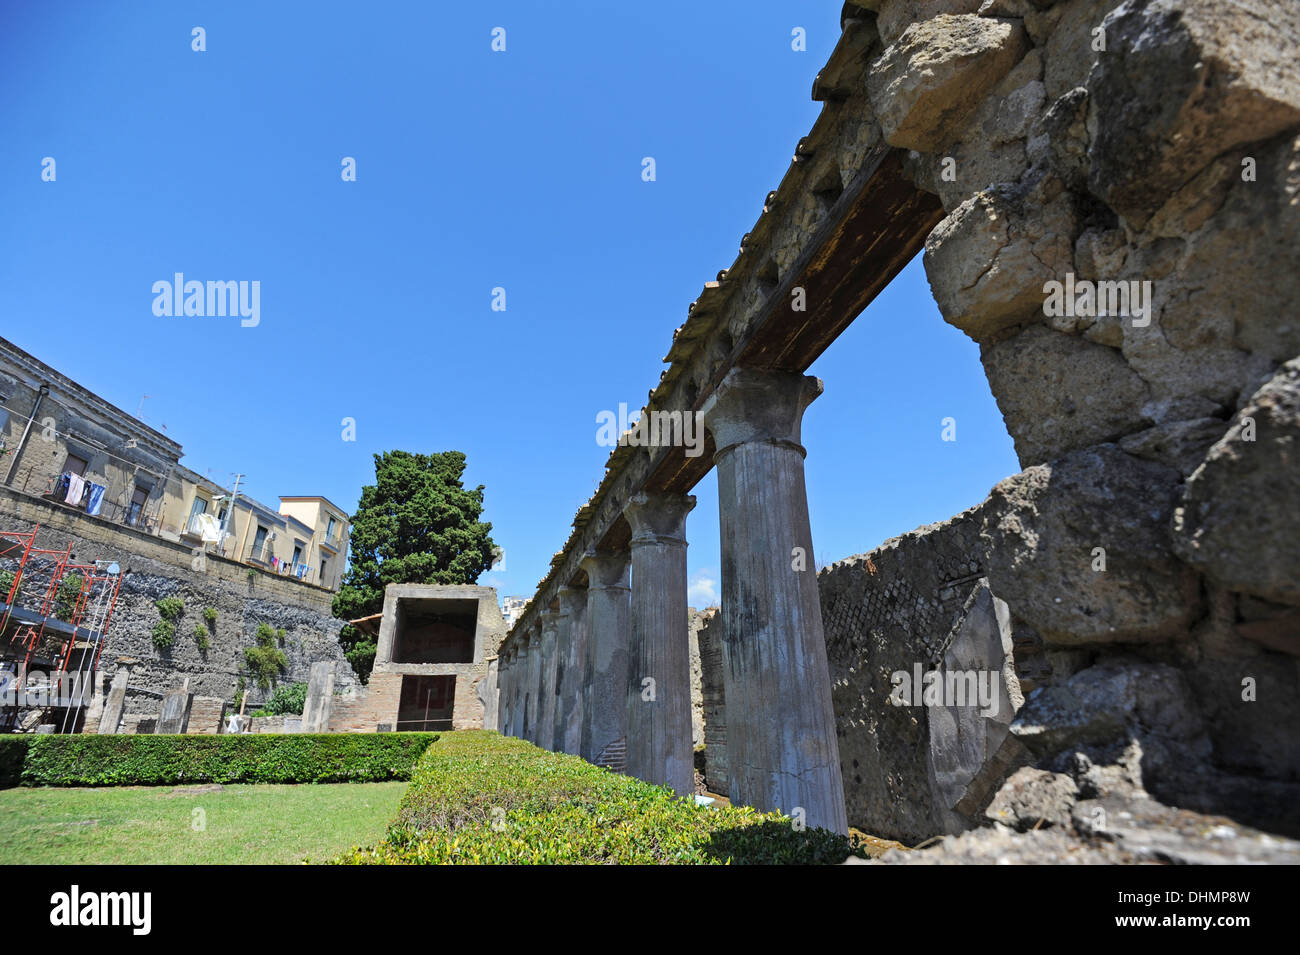 Row of columns round a garden area in Herculaneum Stock Photo